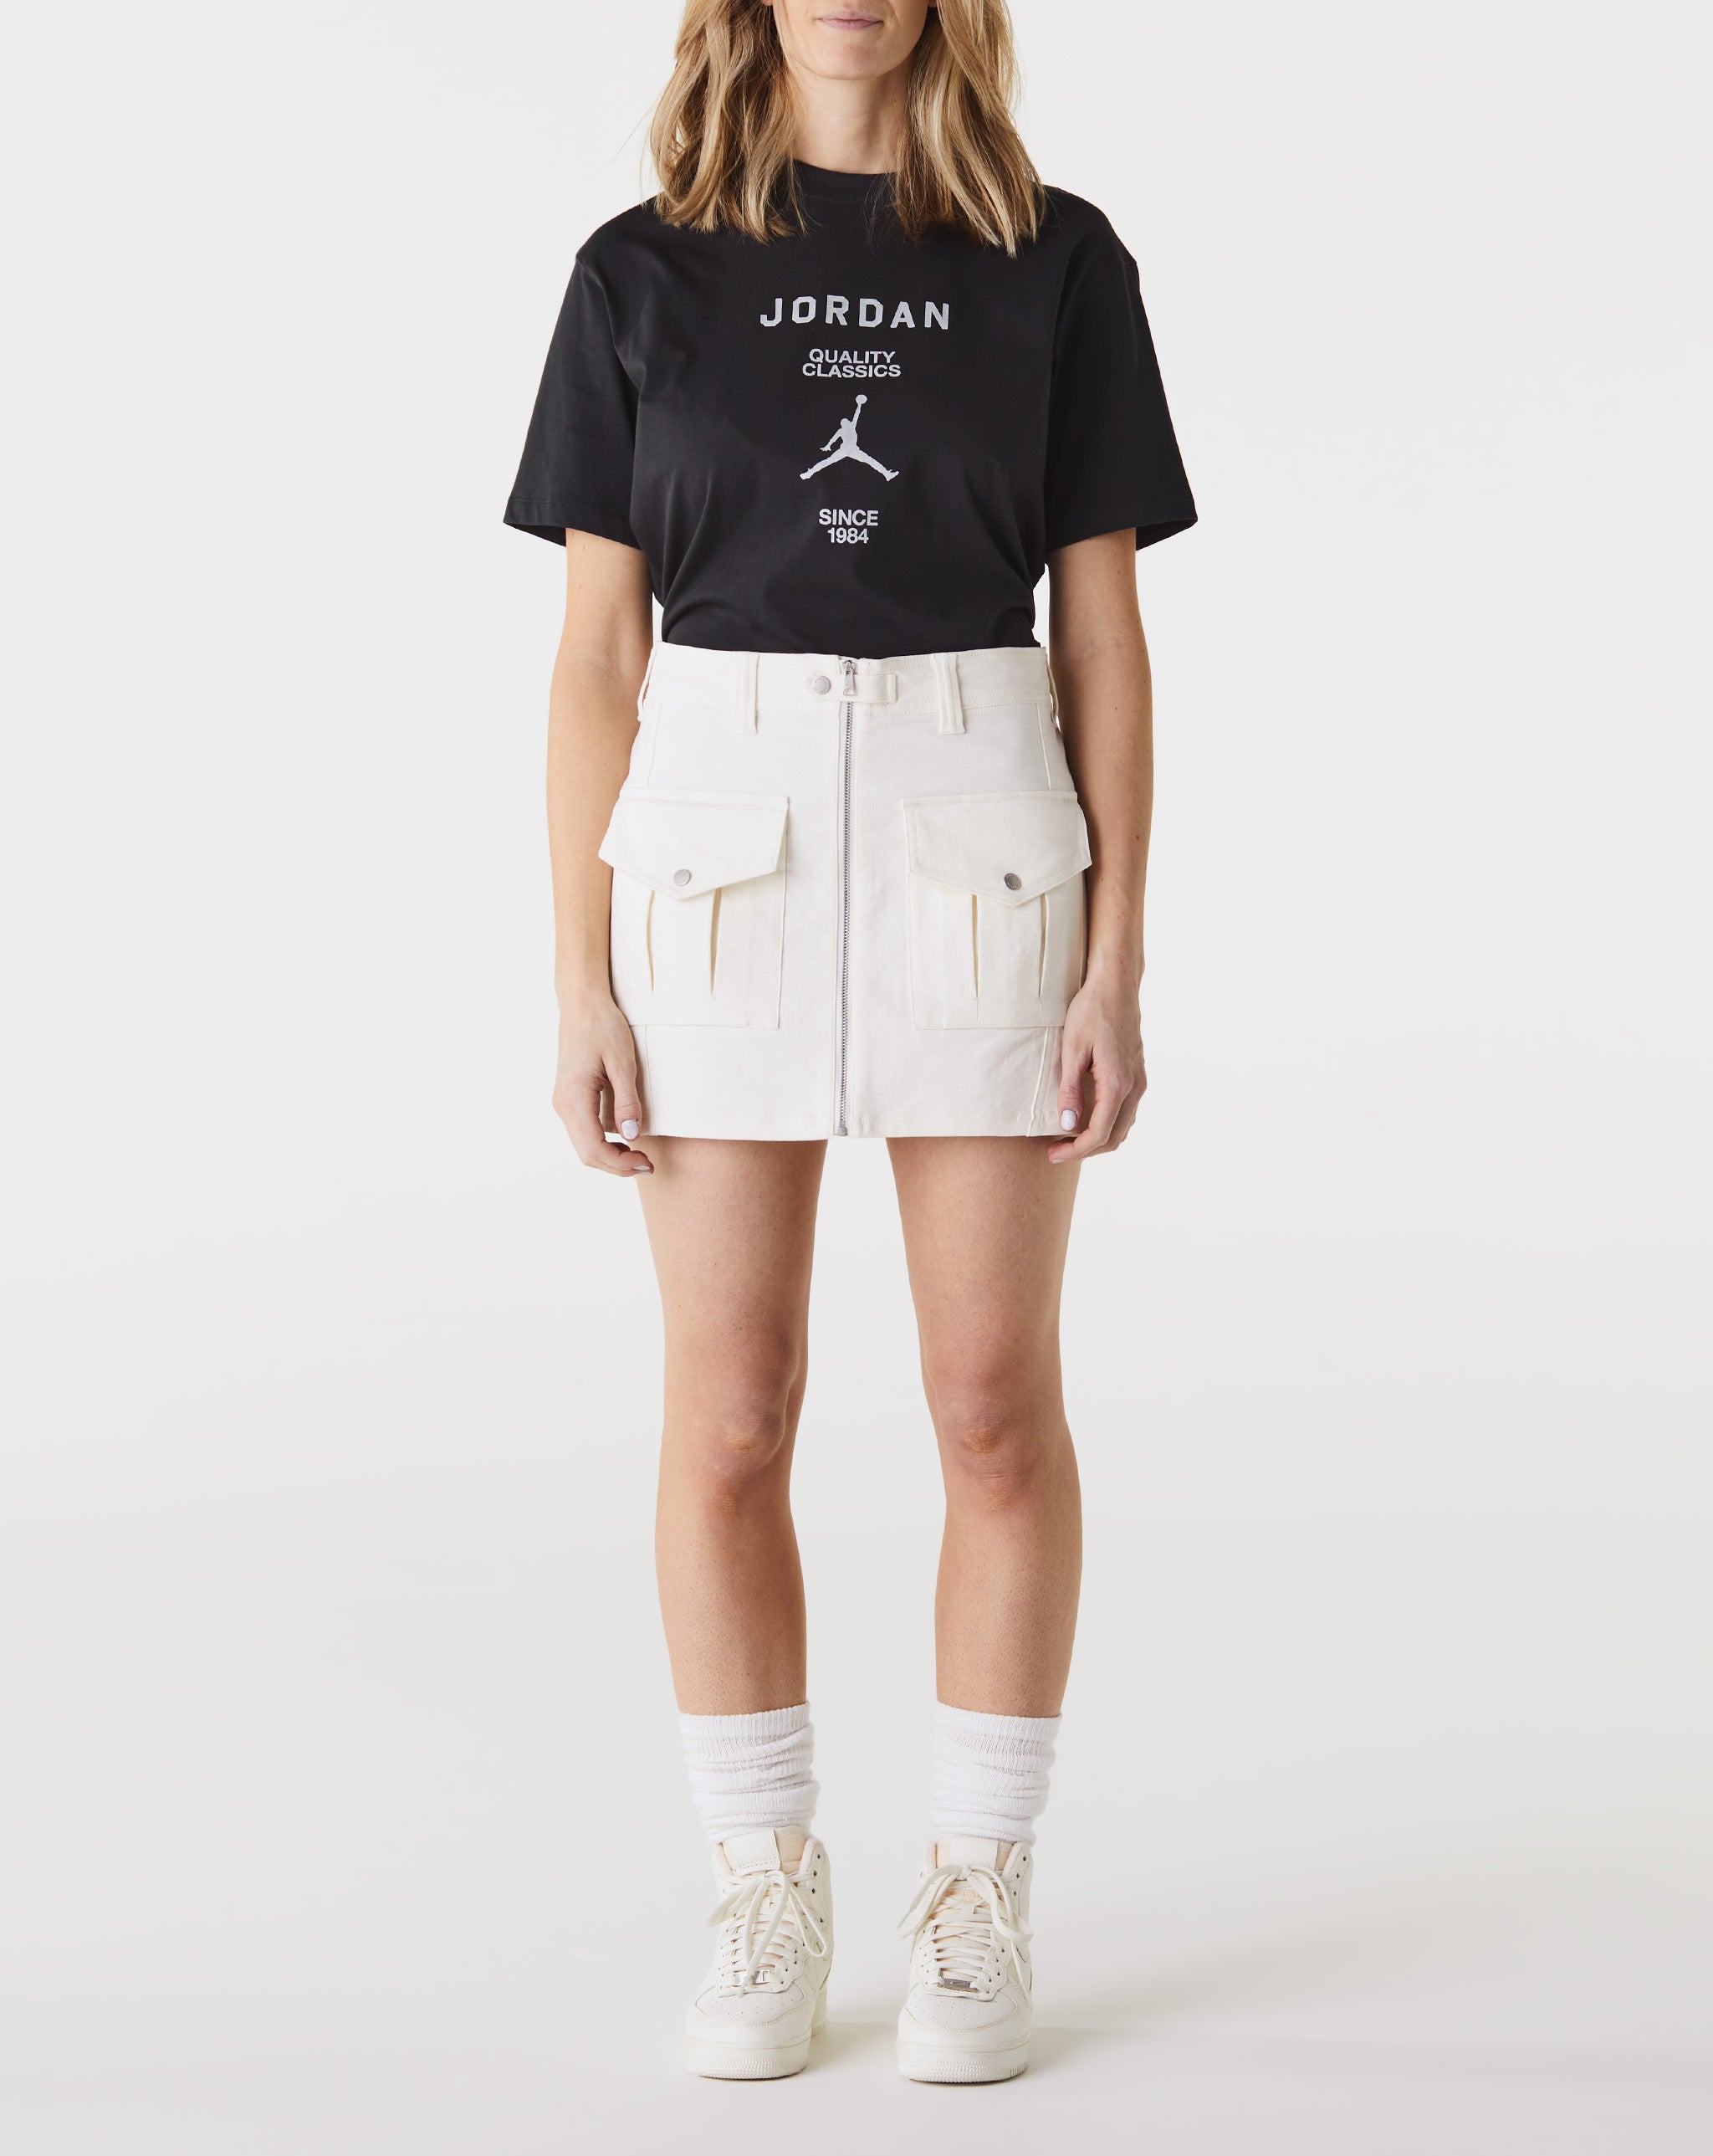 Air Jordan Women's Utility Skirt  - Cheap Urlfreeze Jordan outlet